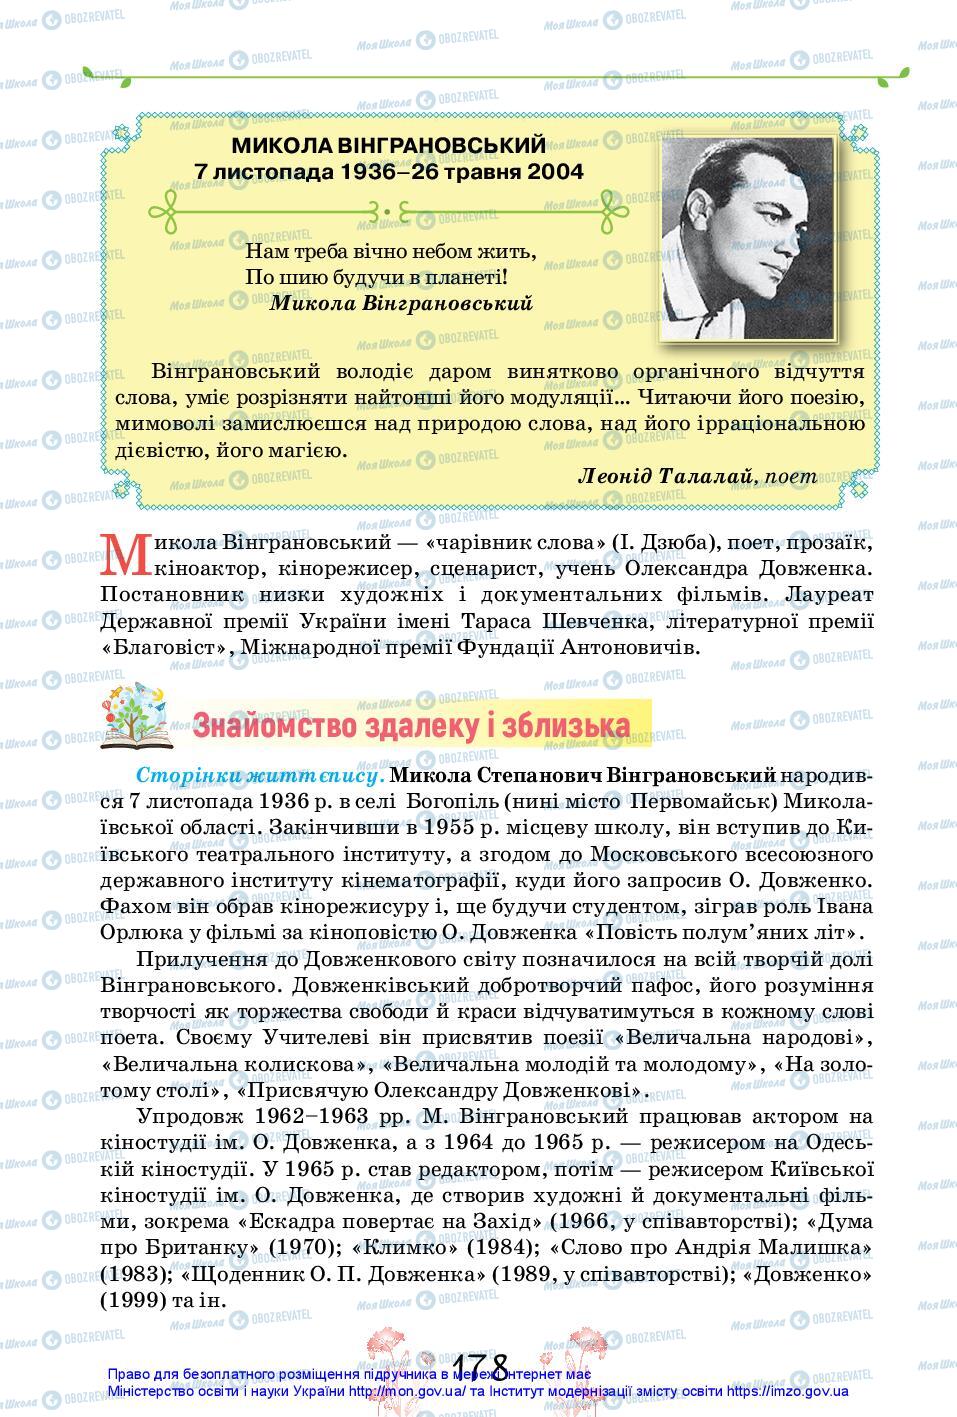 Учебники Укр лит 11 класс страница 178